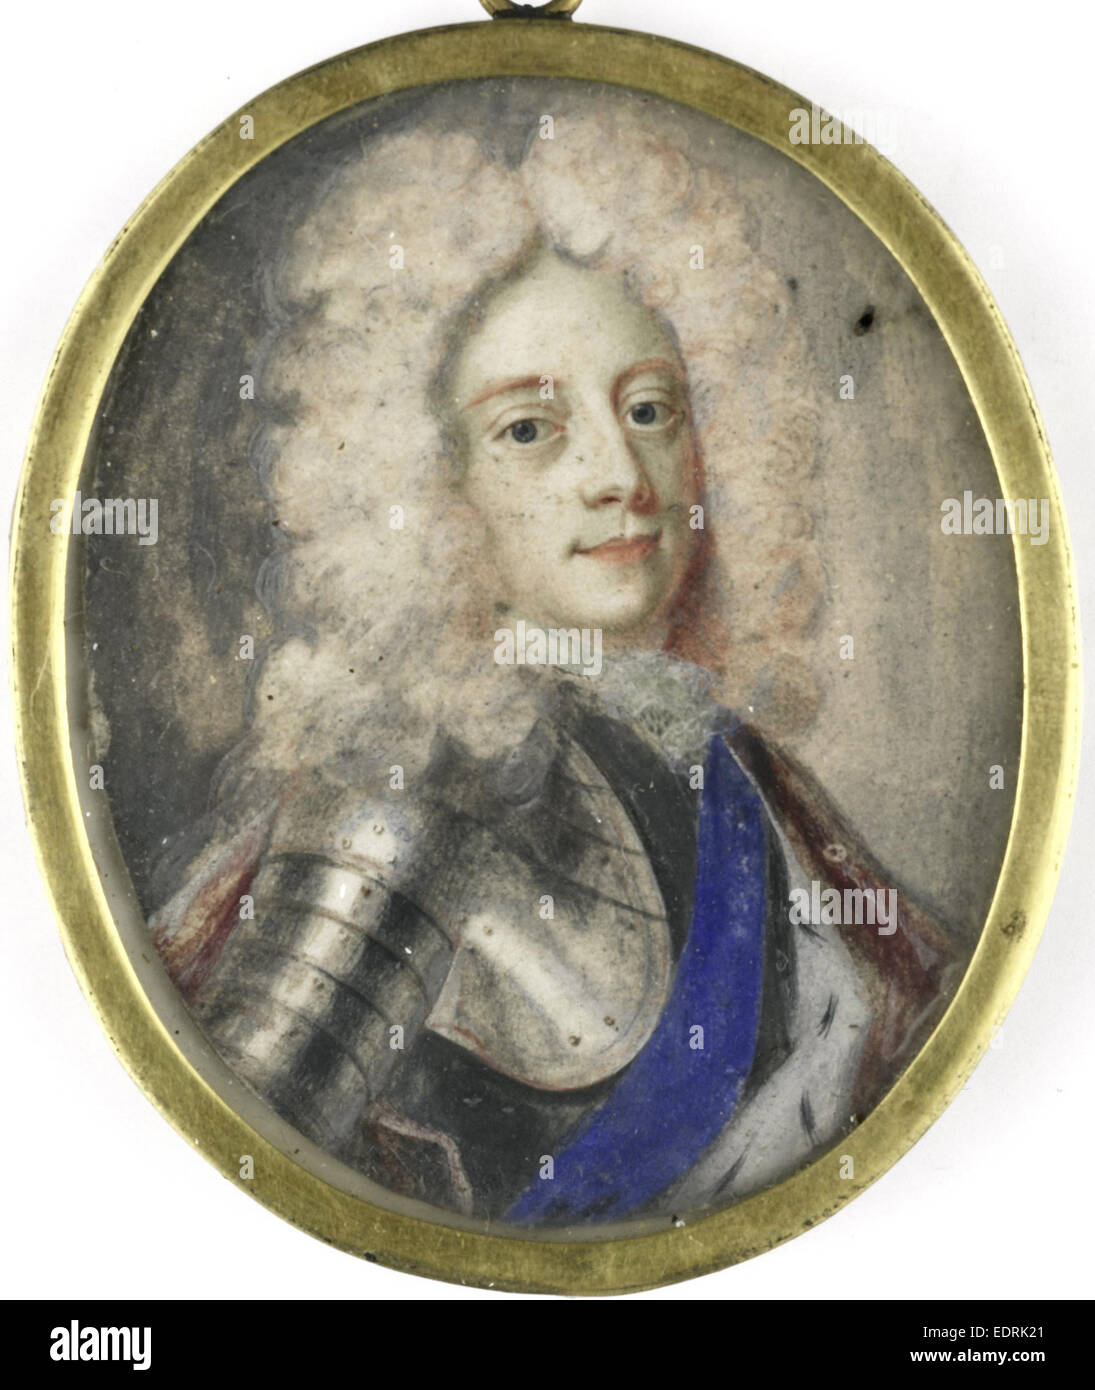 Jorge II, 1683-1760, Rey de Inglaterra, Benoît Arlaud, 1706, Retrato miniatura Foto de stock